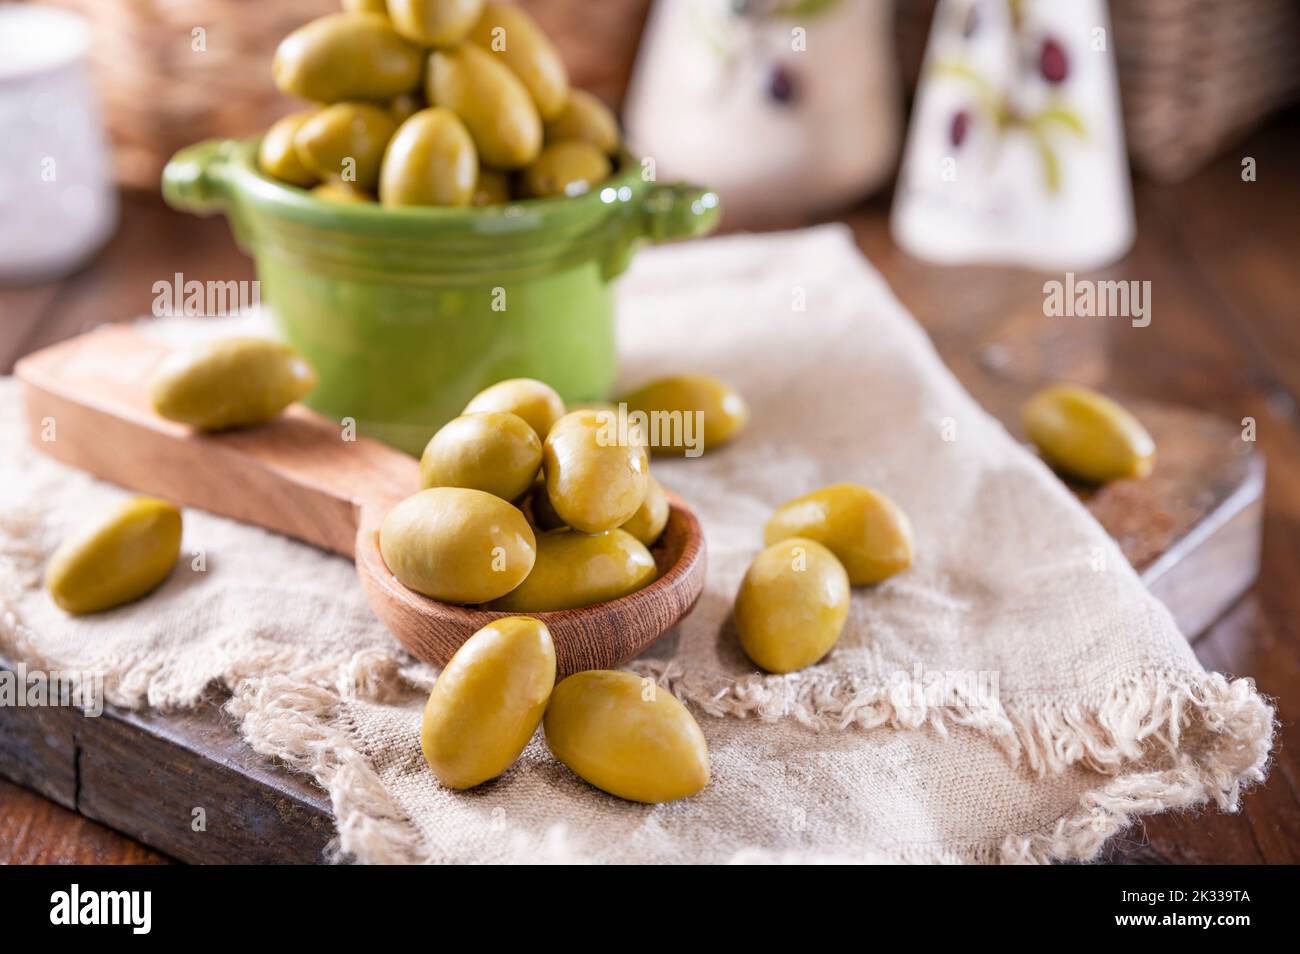 Grandi olive verdi in una tazza su un tavolo di legno. Olive italiane, vendemmia Sardenya e Grecia. L'olio d'oliva viene versato sulle bacche, le foglie d'oliva nel telaio. Primo piano. Copia sapce Foto Stock